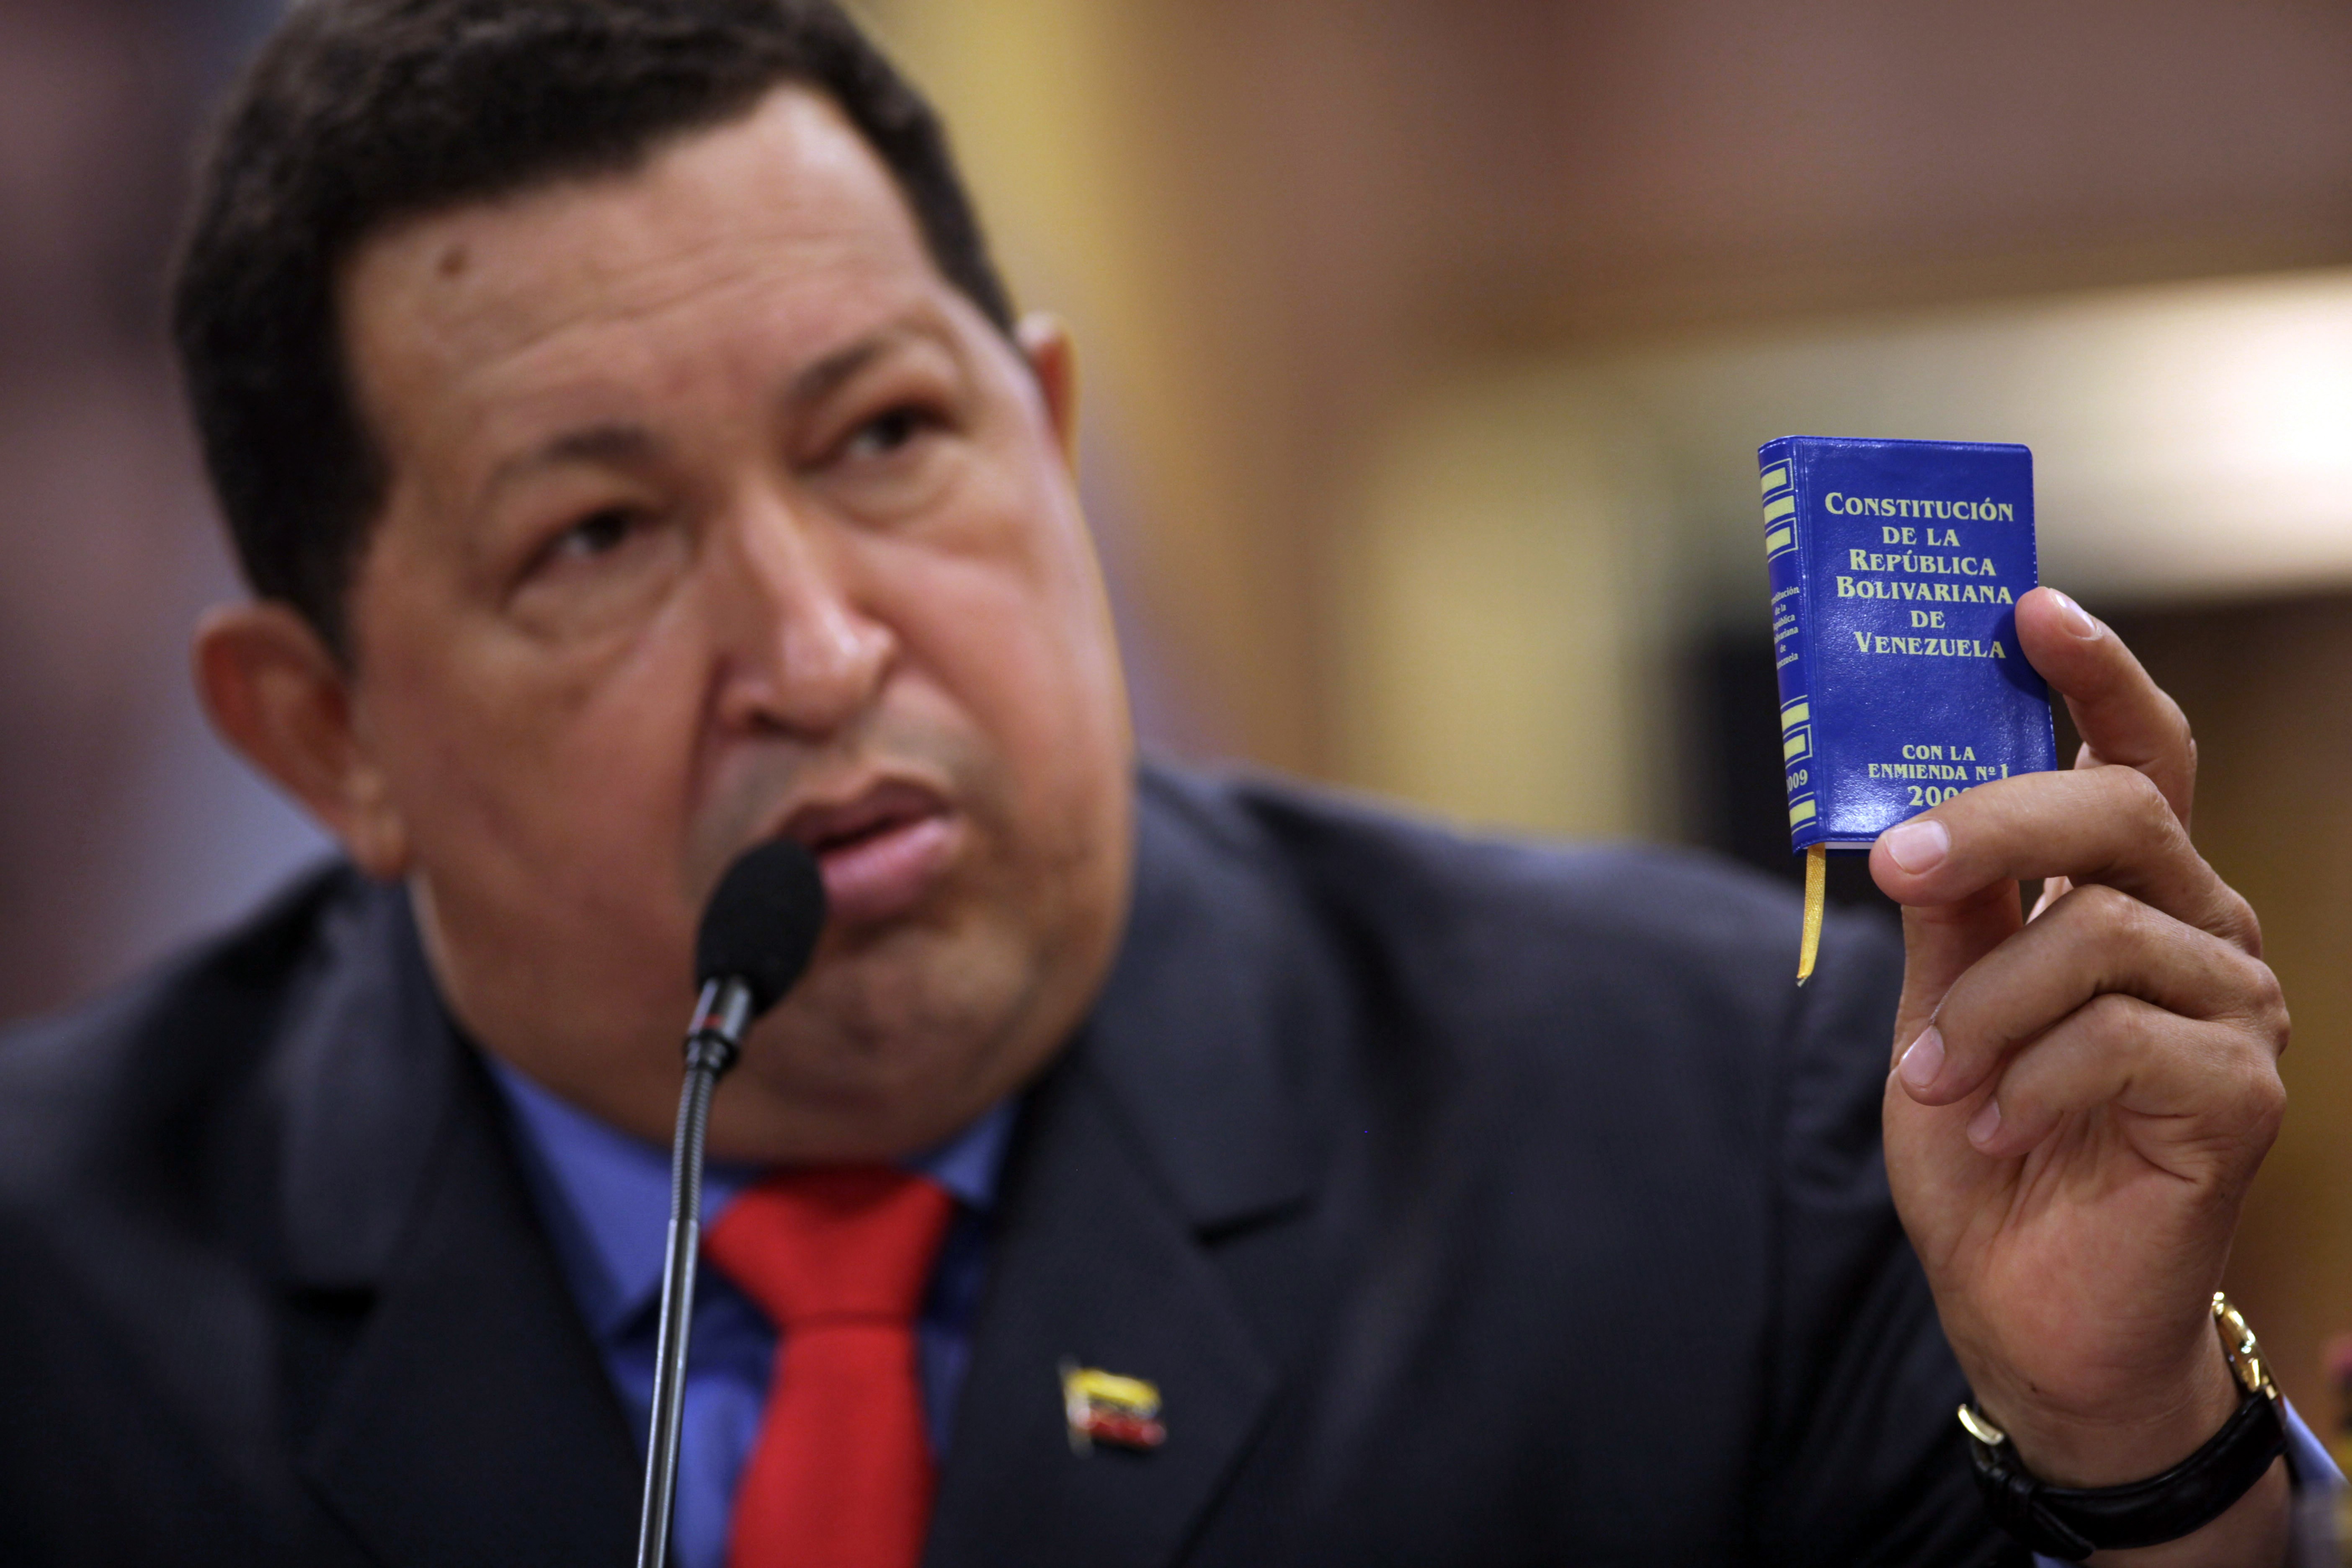 Em foto de 9 de outubro de 2012, o presidente da Venezuela, Hugo Chávez, fala em uma conferência segurando a ministura da constituição do país. (Foto: AP/ ASSOCIATED PRESS)